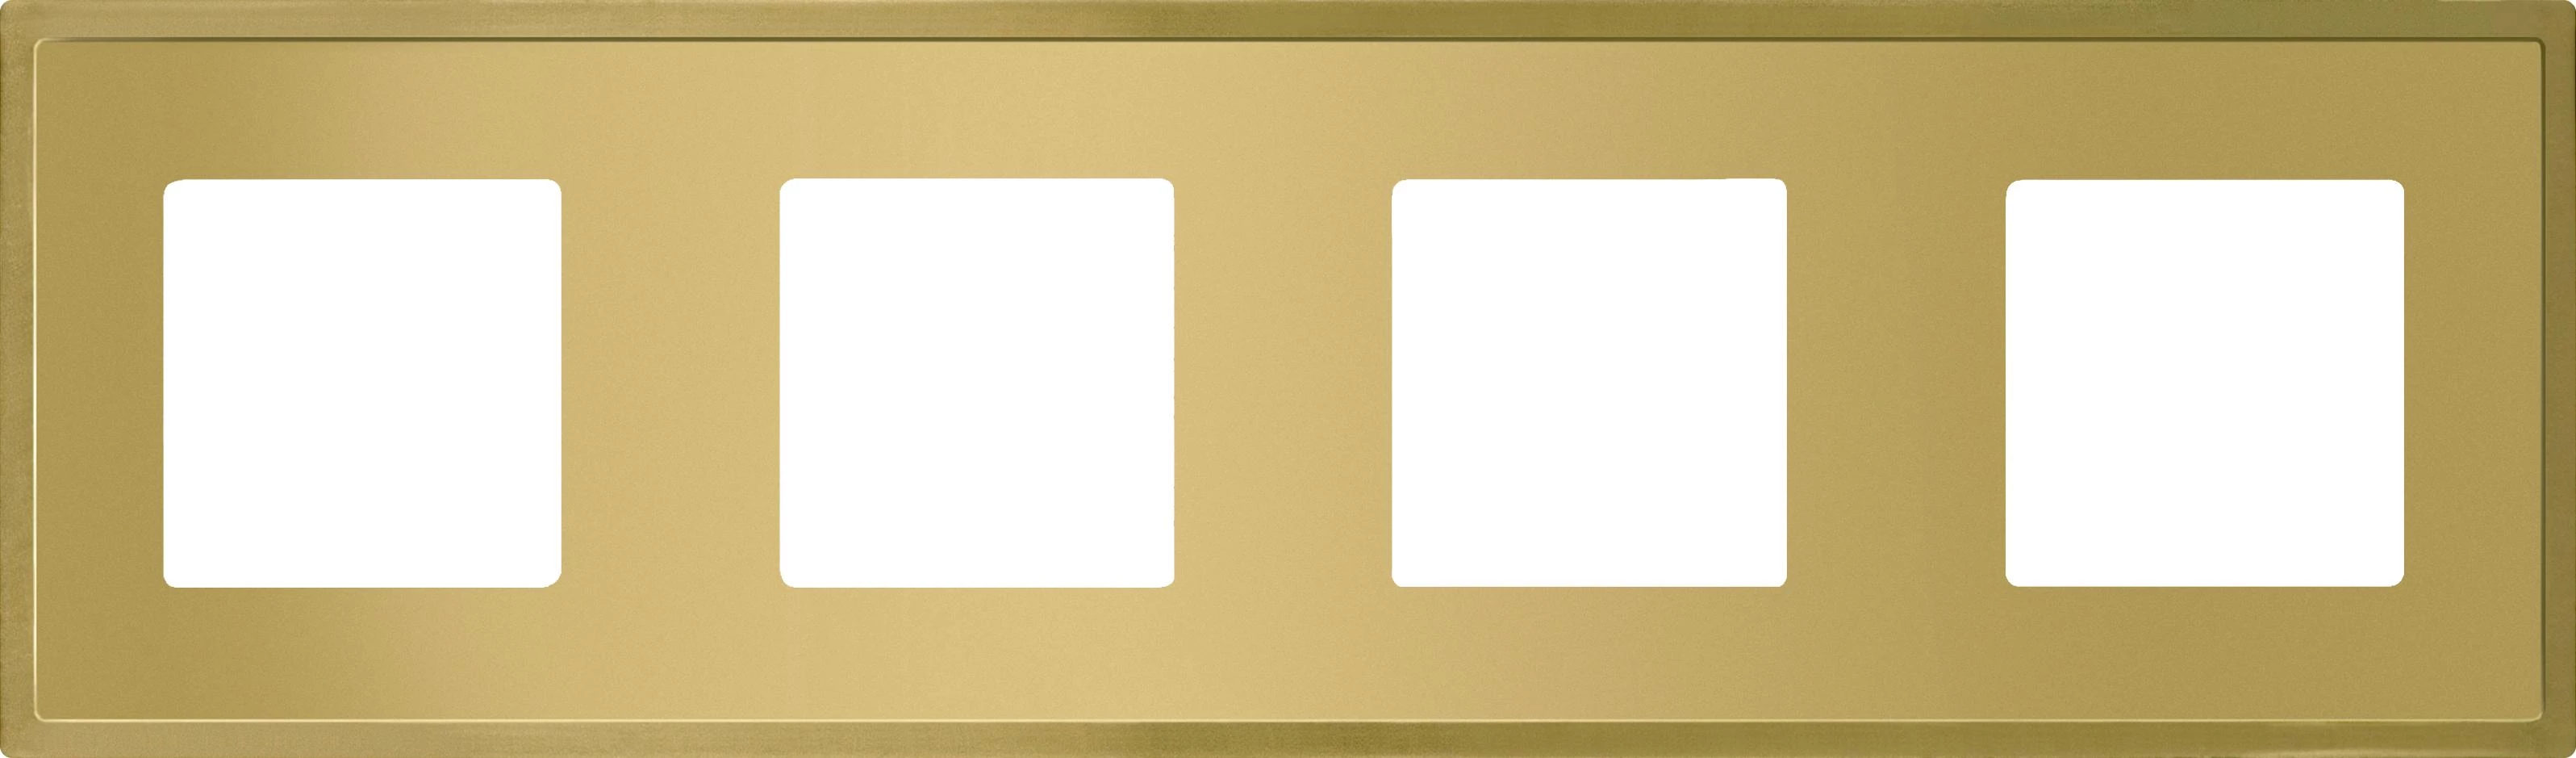  артикул FD01244OB название Рамка 4-ая (четверная), цвет Светлое золото, Madrid, Fede